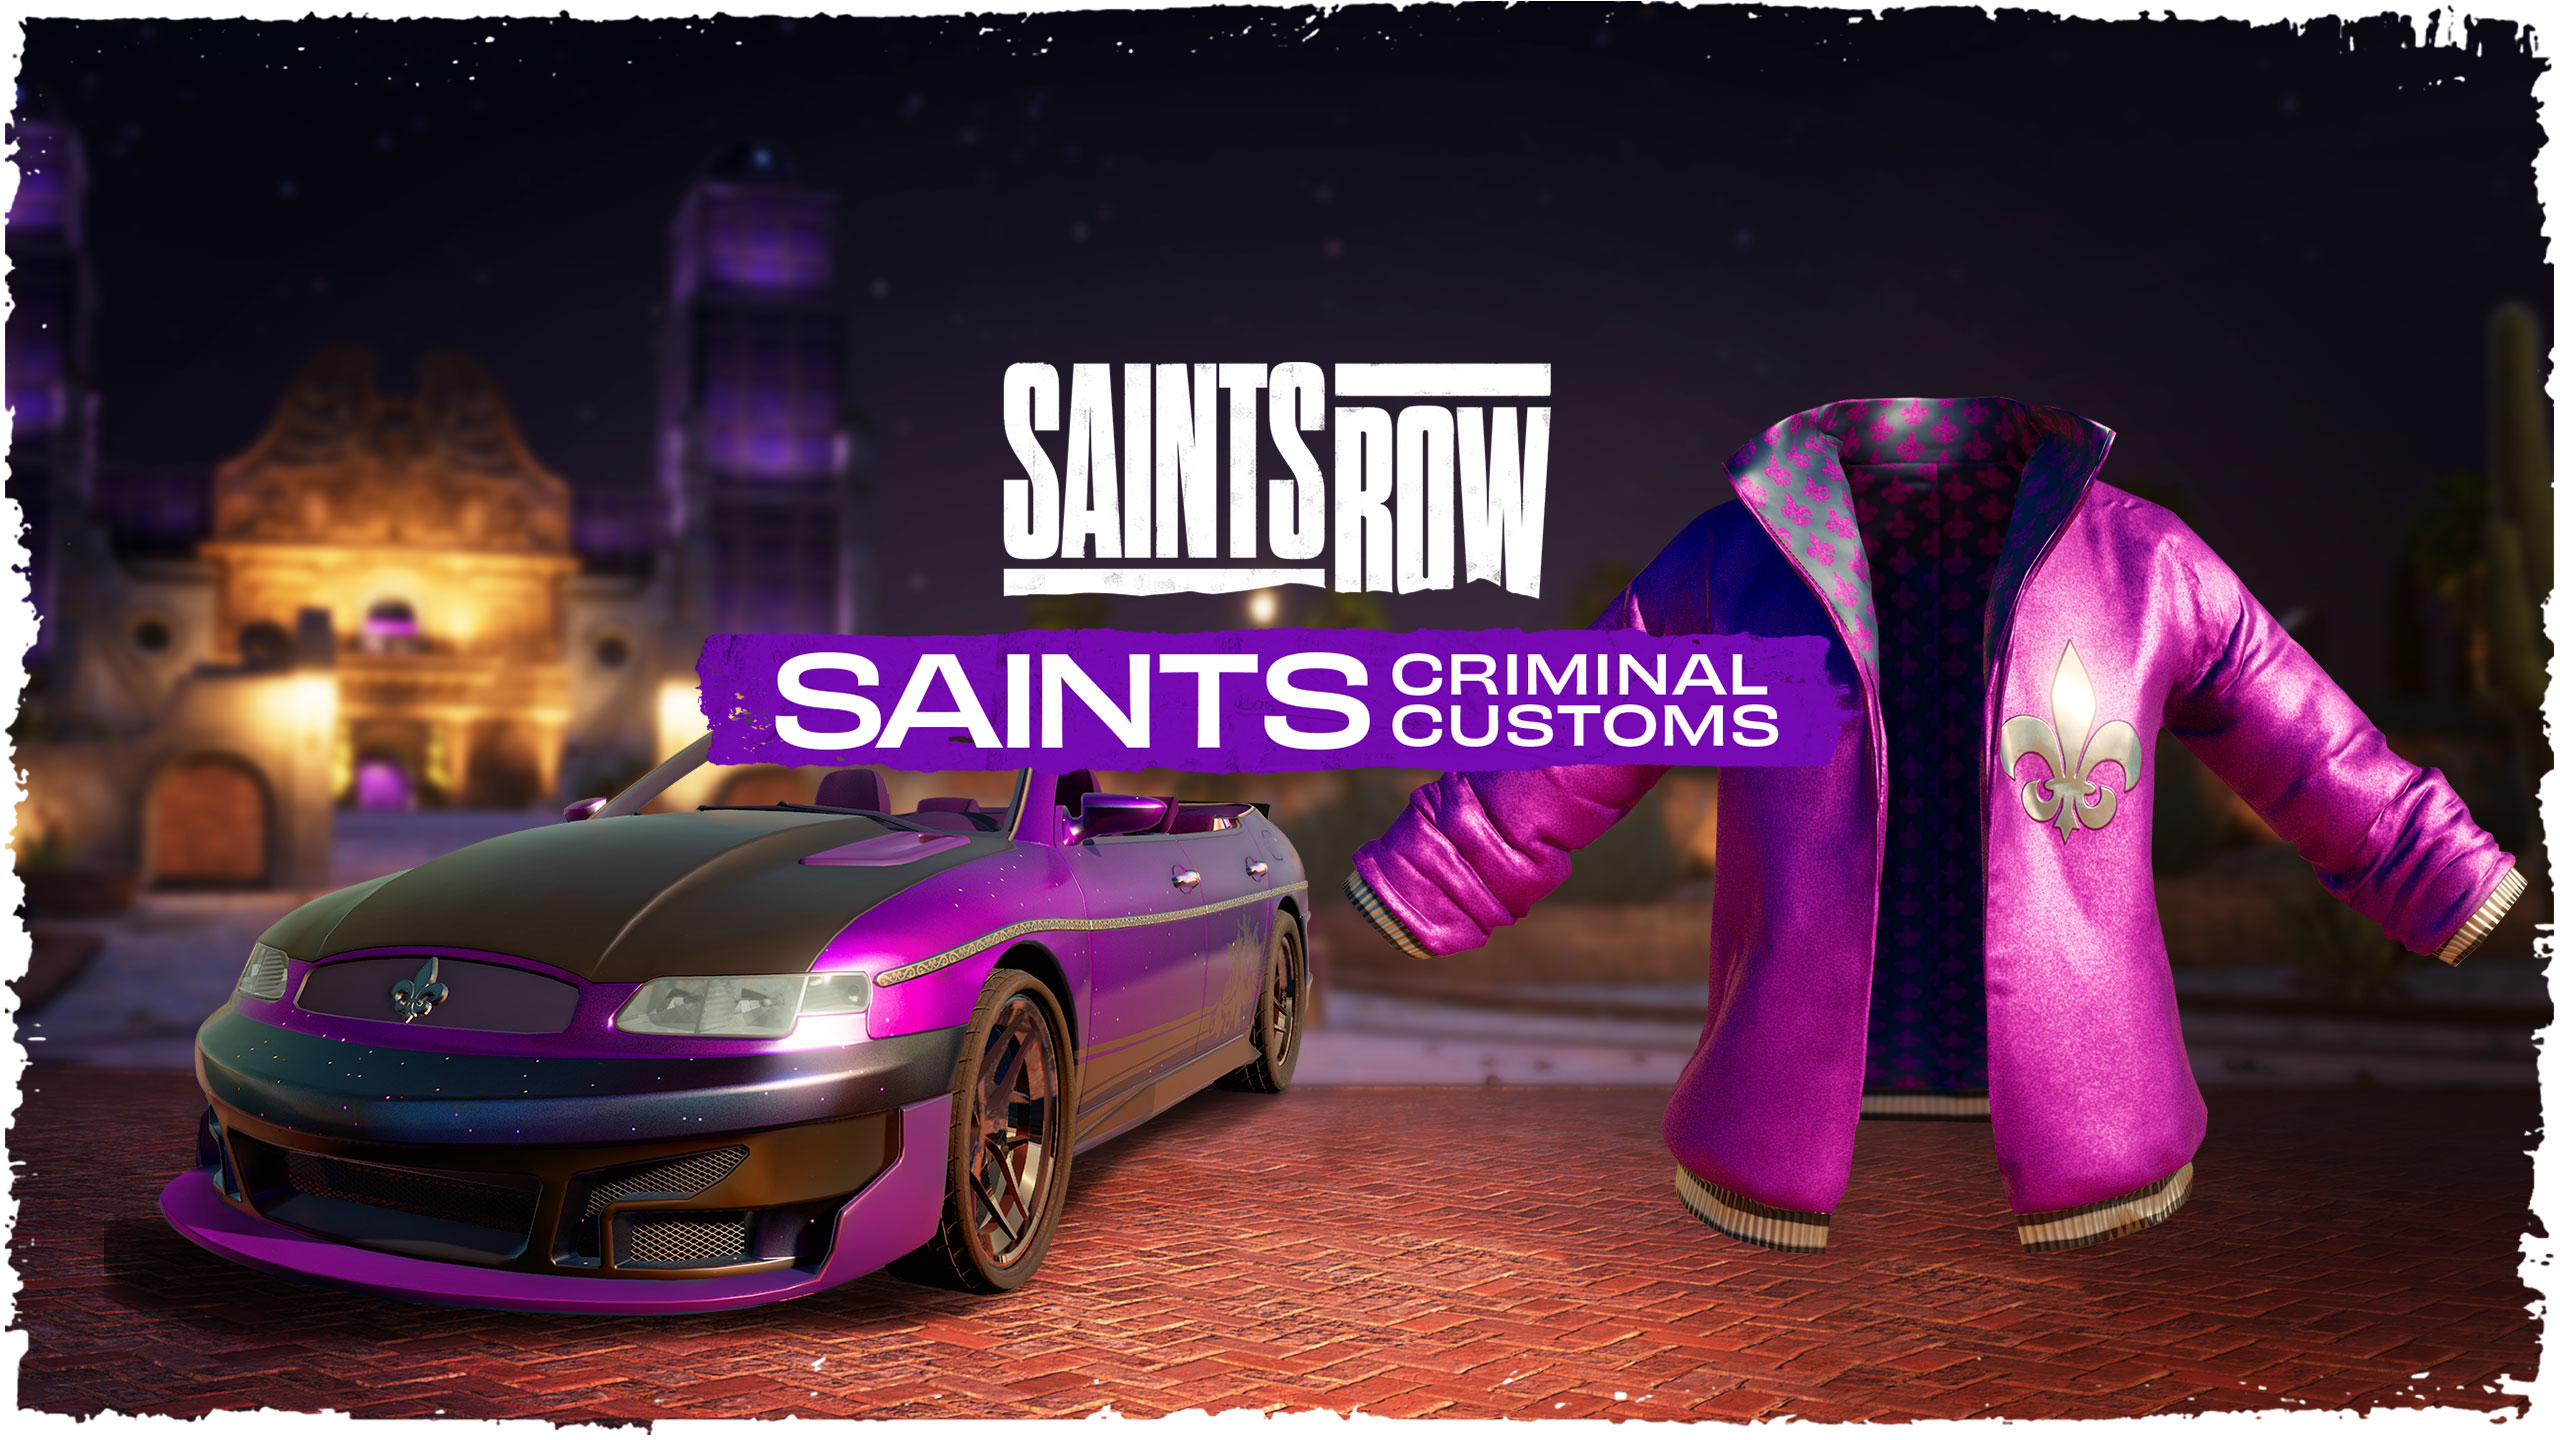 Saints Row Saints Criminal Customs Edition Epic Games CD Key $68.2